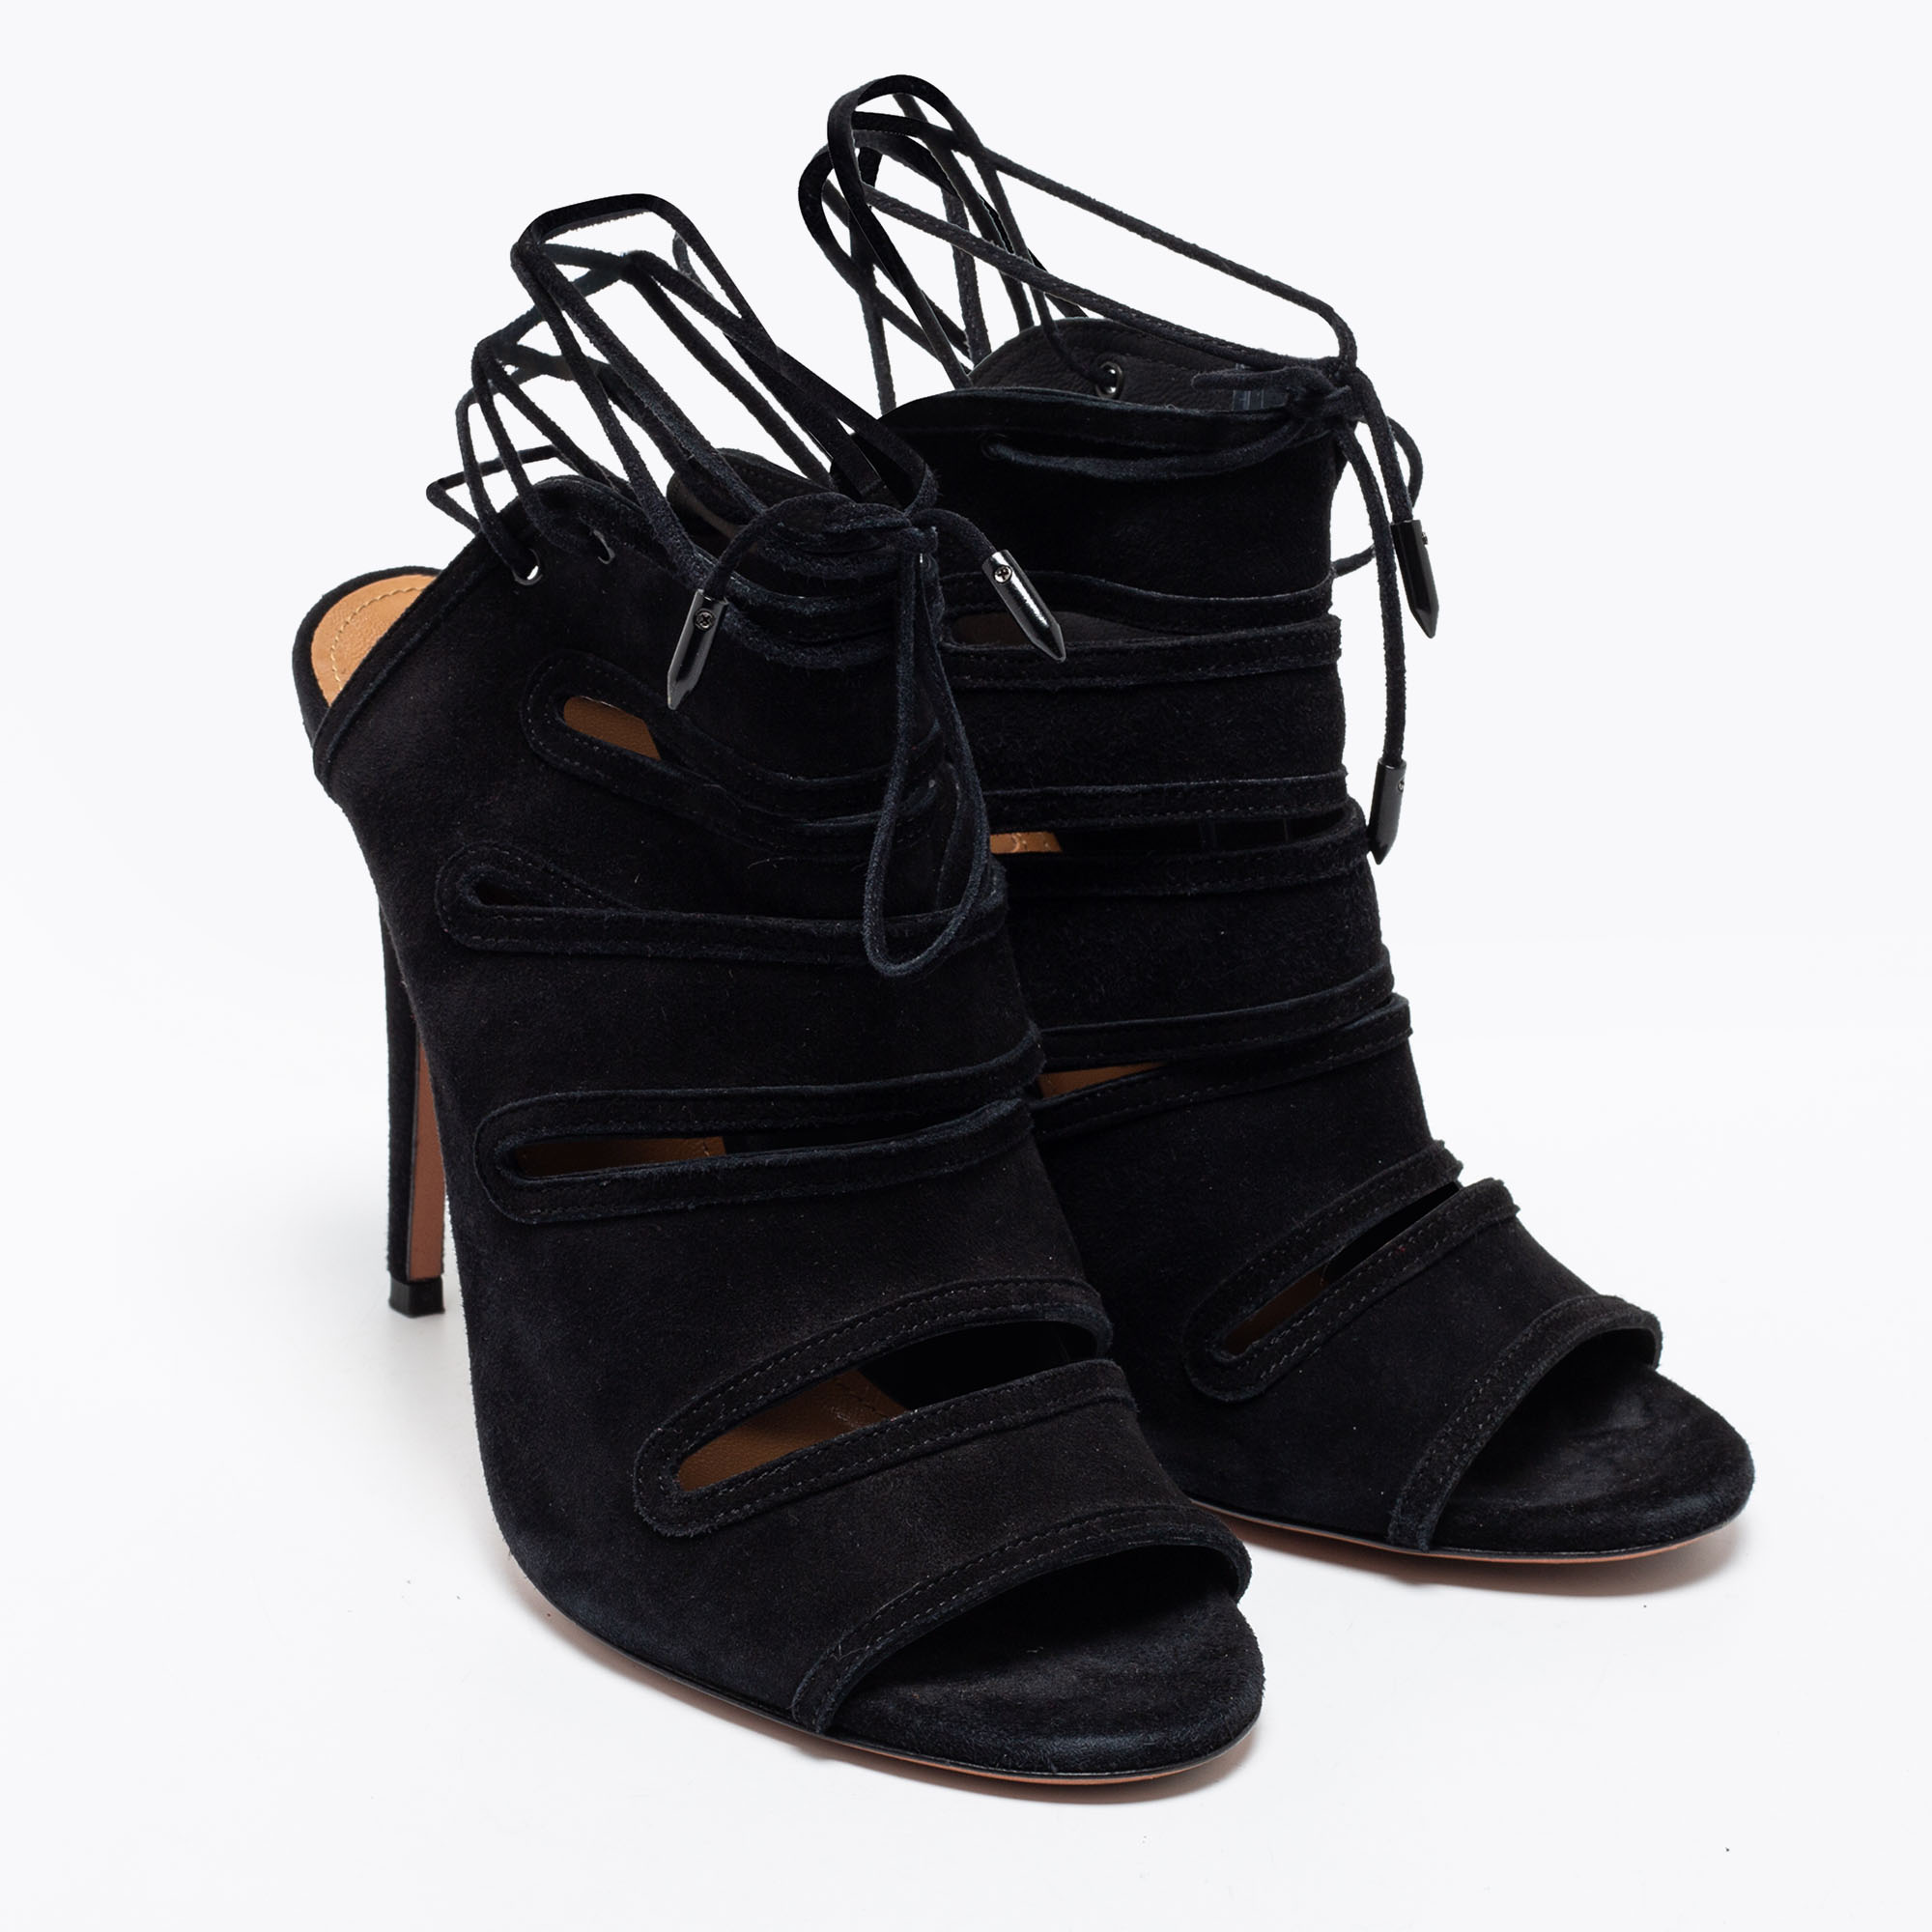 Aquazzura Black Suede Sloane Cut Out Tie Up Sandals Size 38